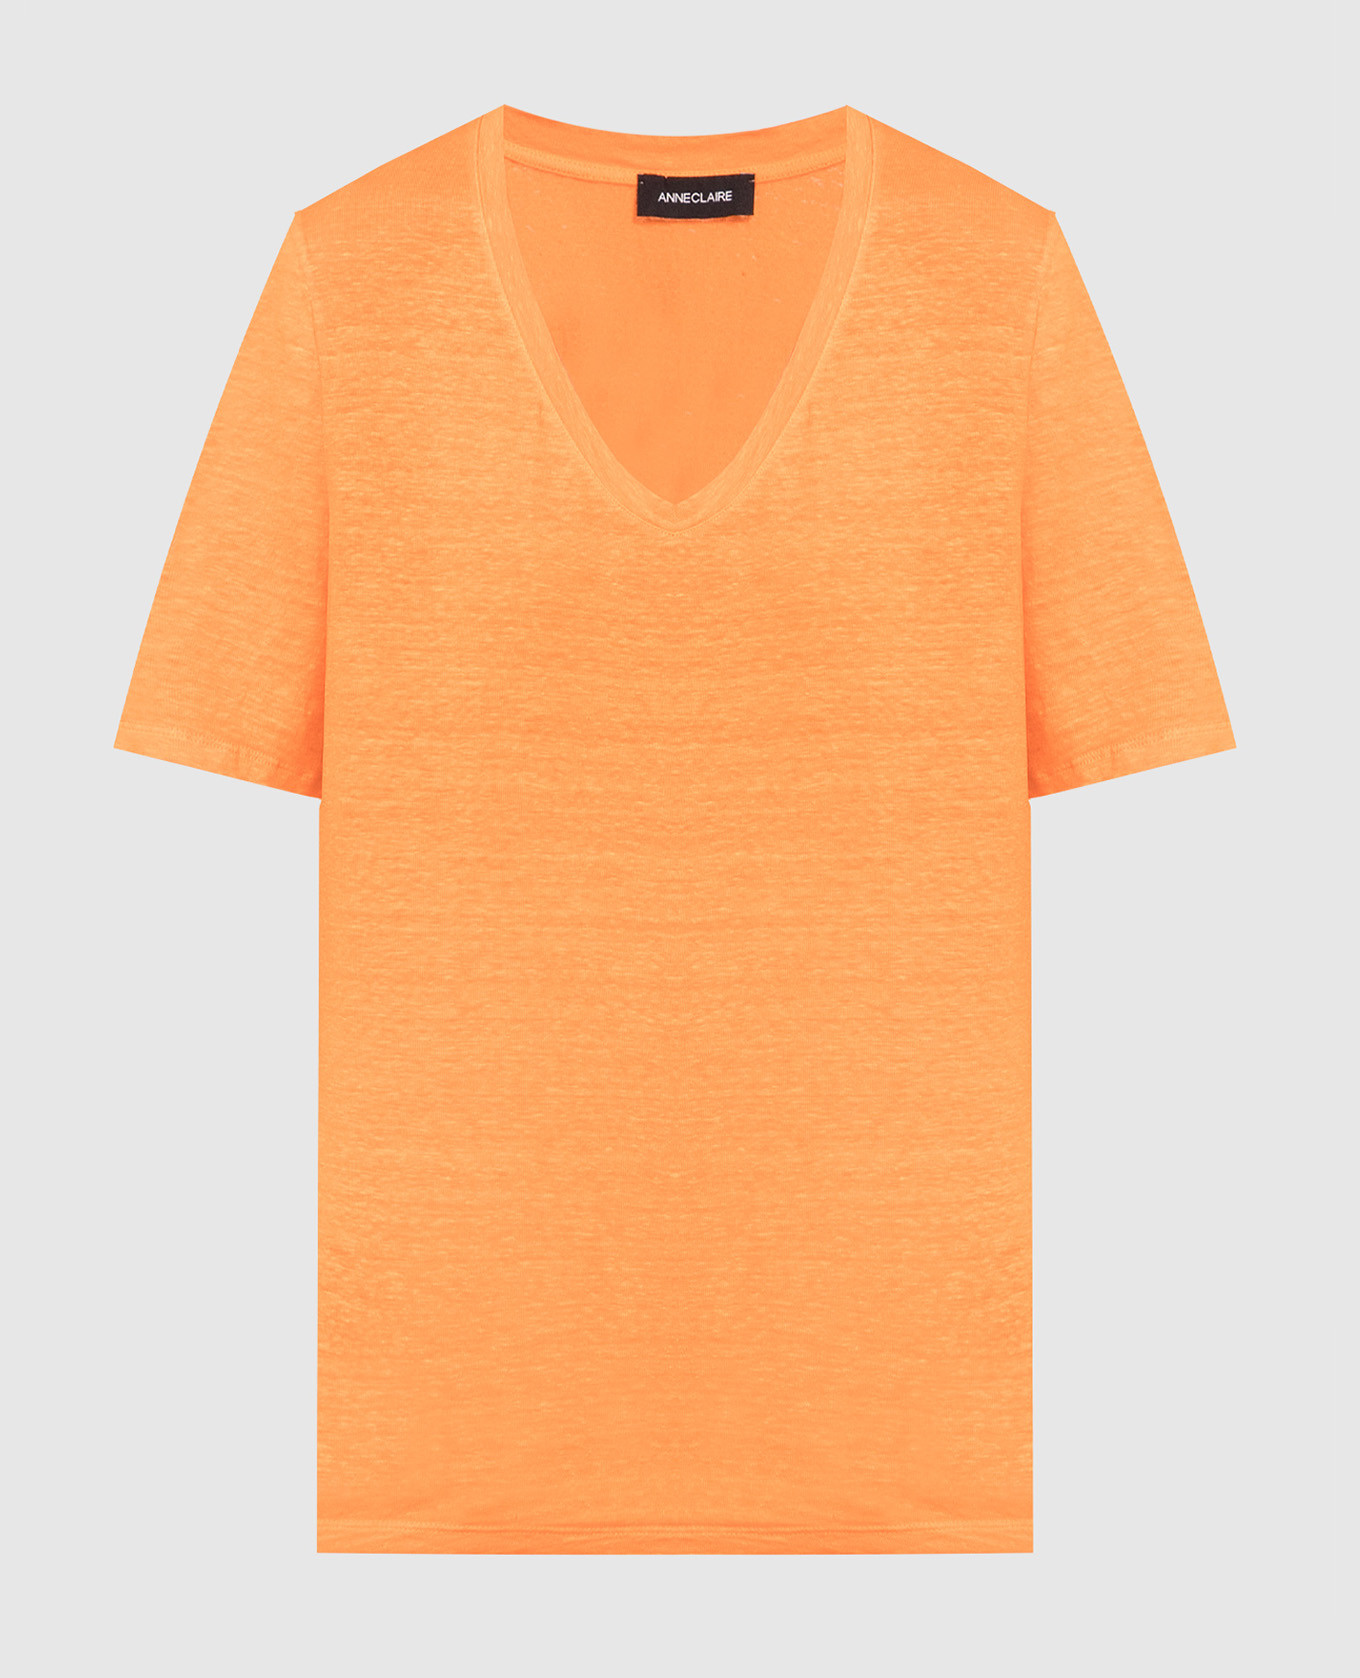 Оранжевая футболка из льна.